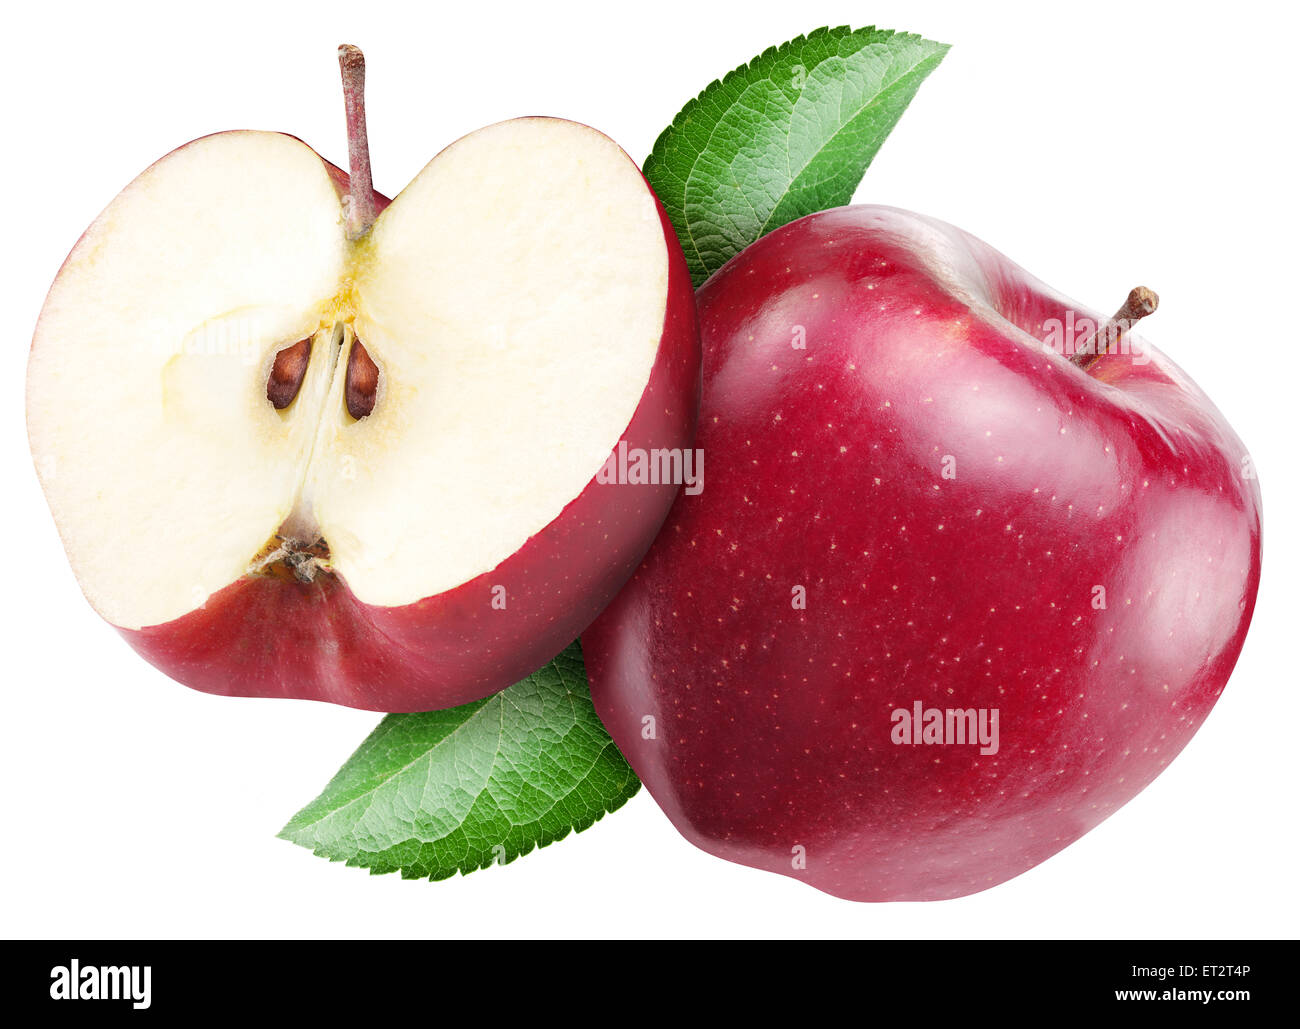 Roter Apfel auf einem weißen Hintergrund. Stockfoto